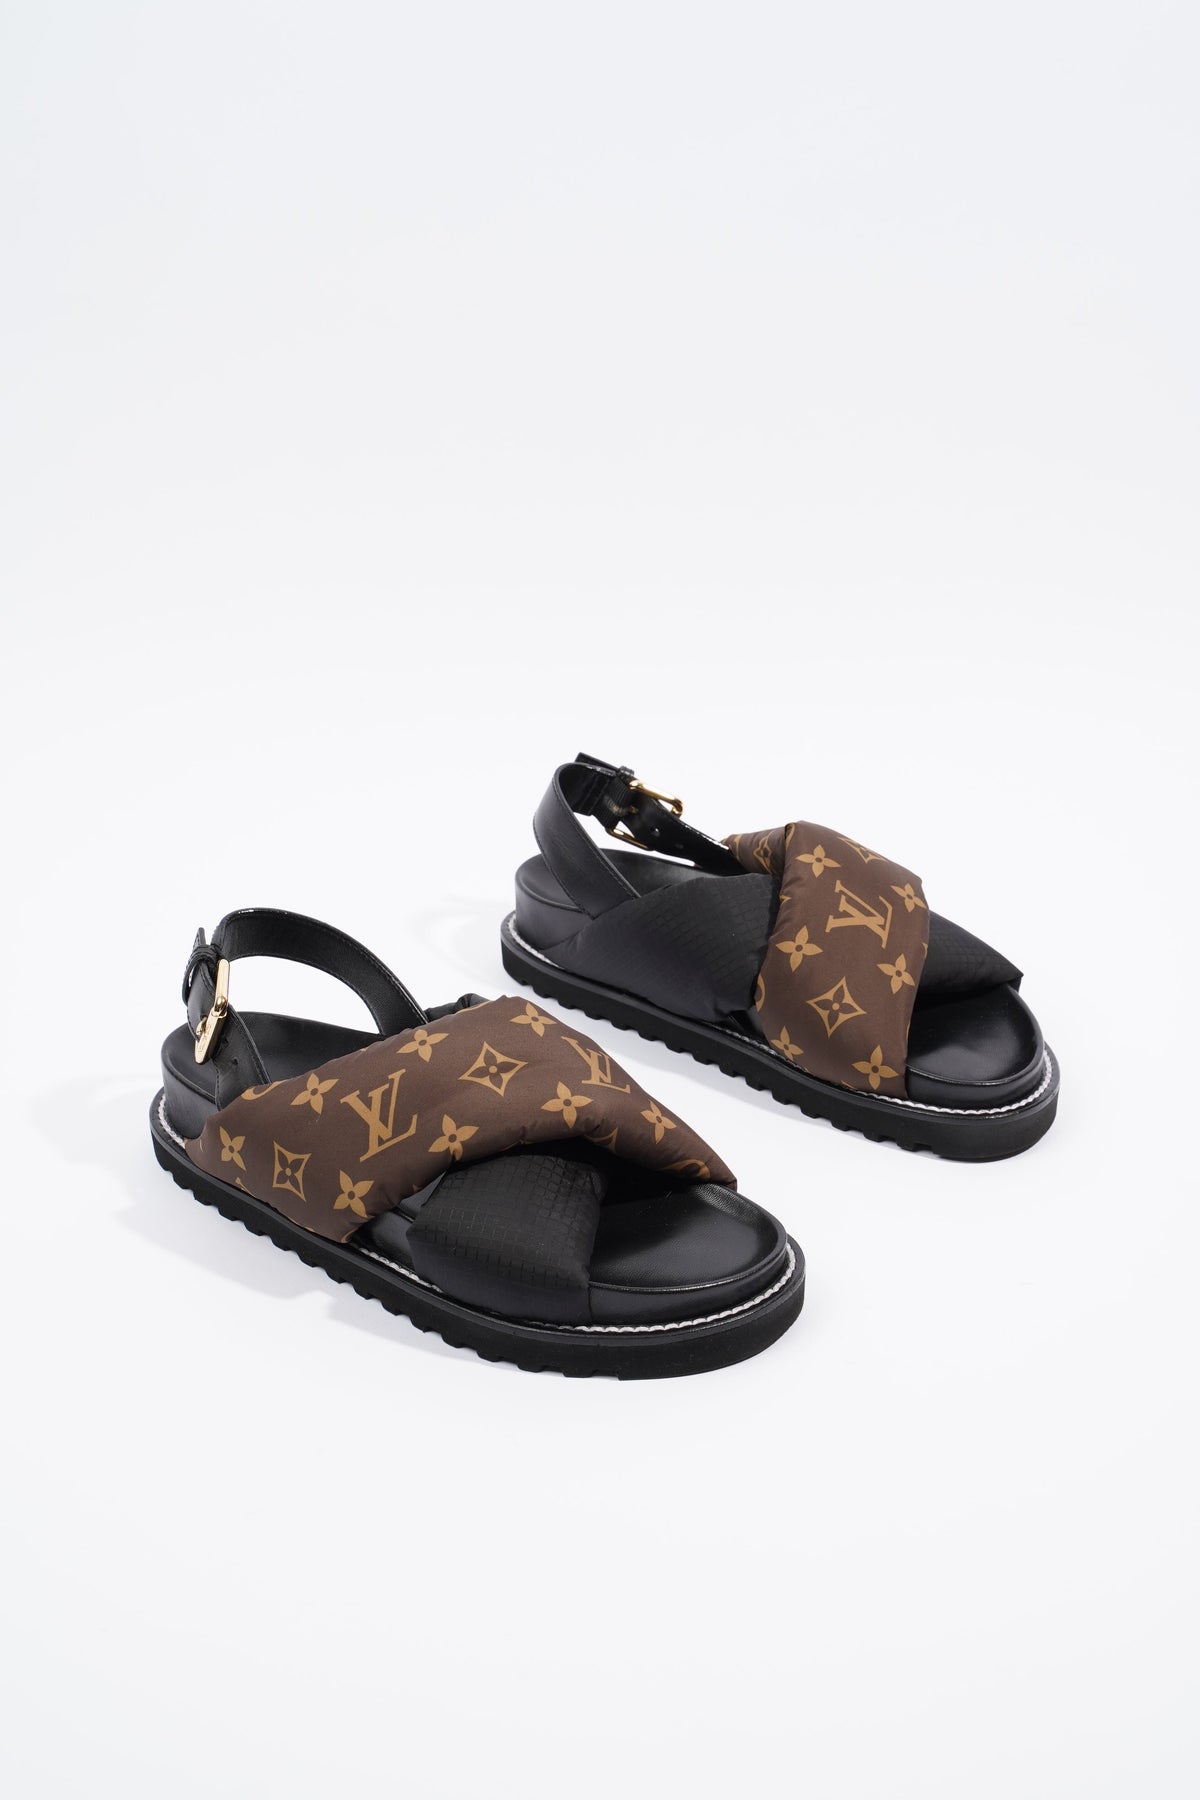 Louis Vuitton Paseo Flat Comfort Sandal, Brown, 36.5